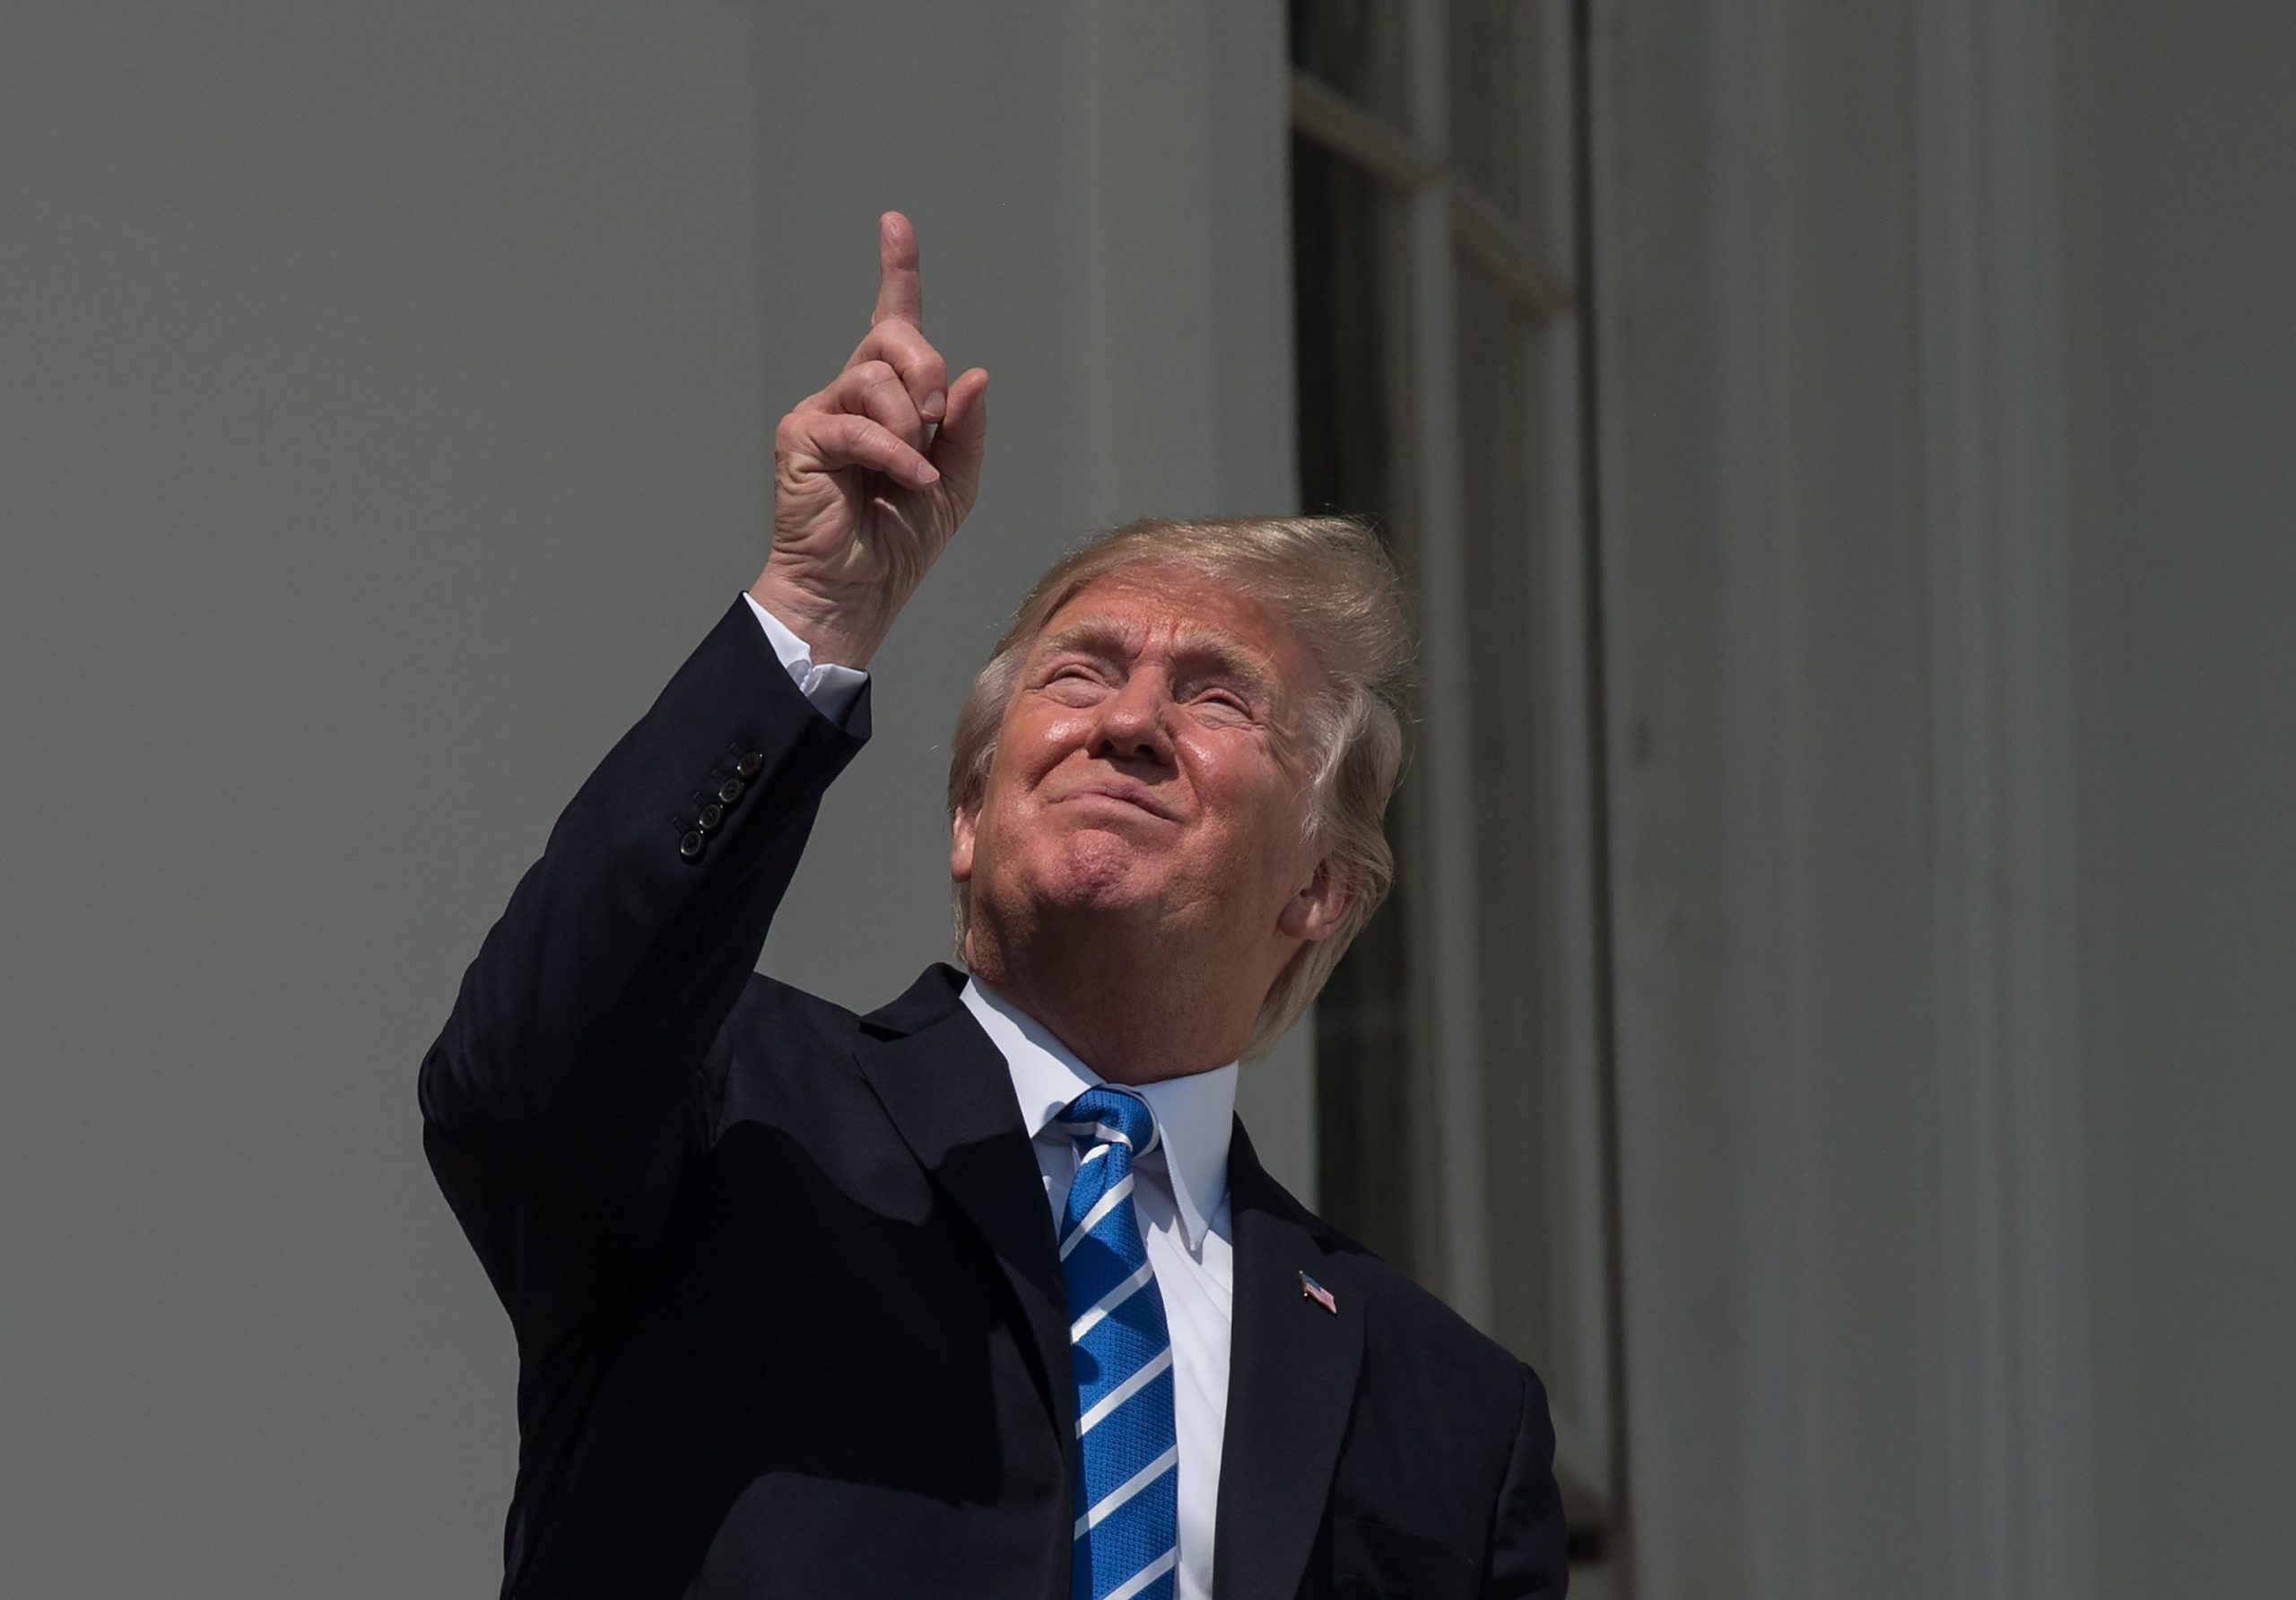 President Donald Trump kijkt naar de gedeeltelijke zonsverduistering vanaf het balkon van het Witte Huis. 21 augustus 2017. Foto: Nicholas Kamm/AFP via Getty Images